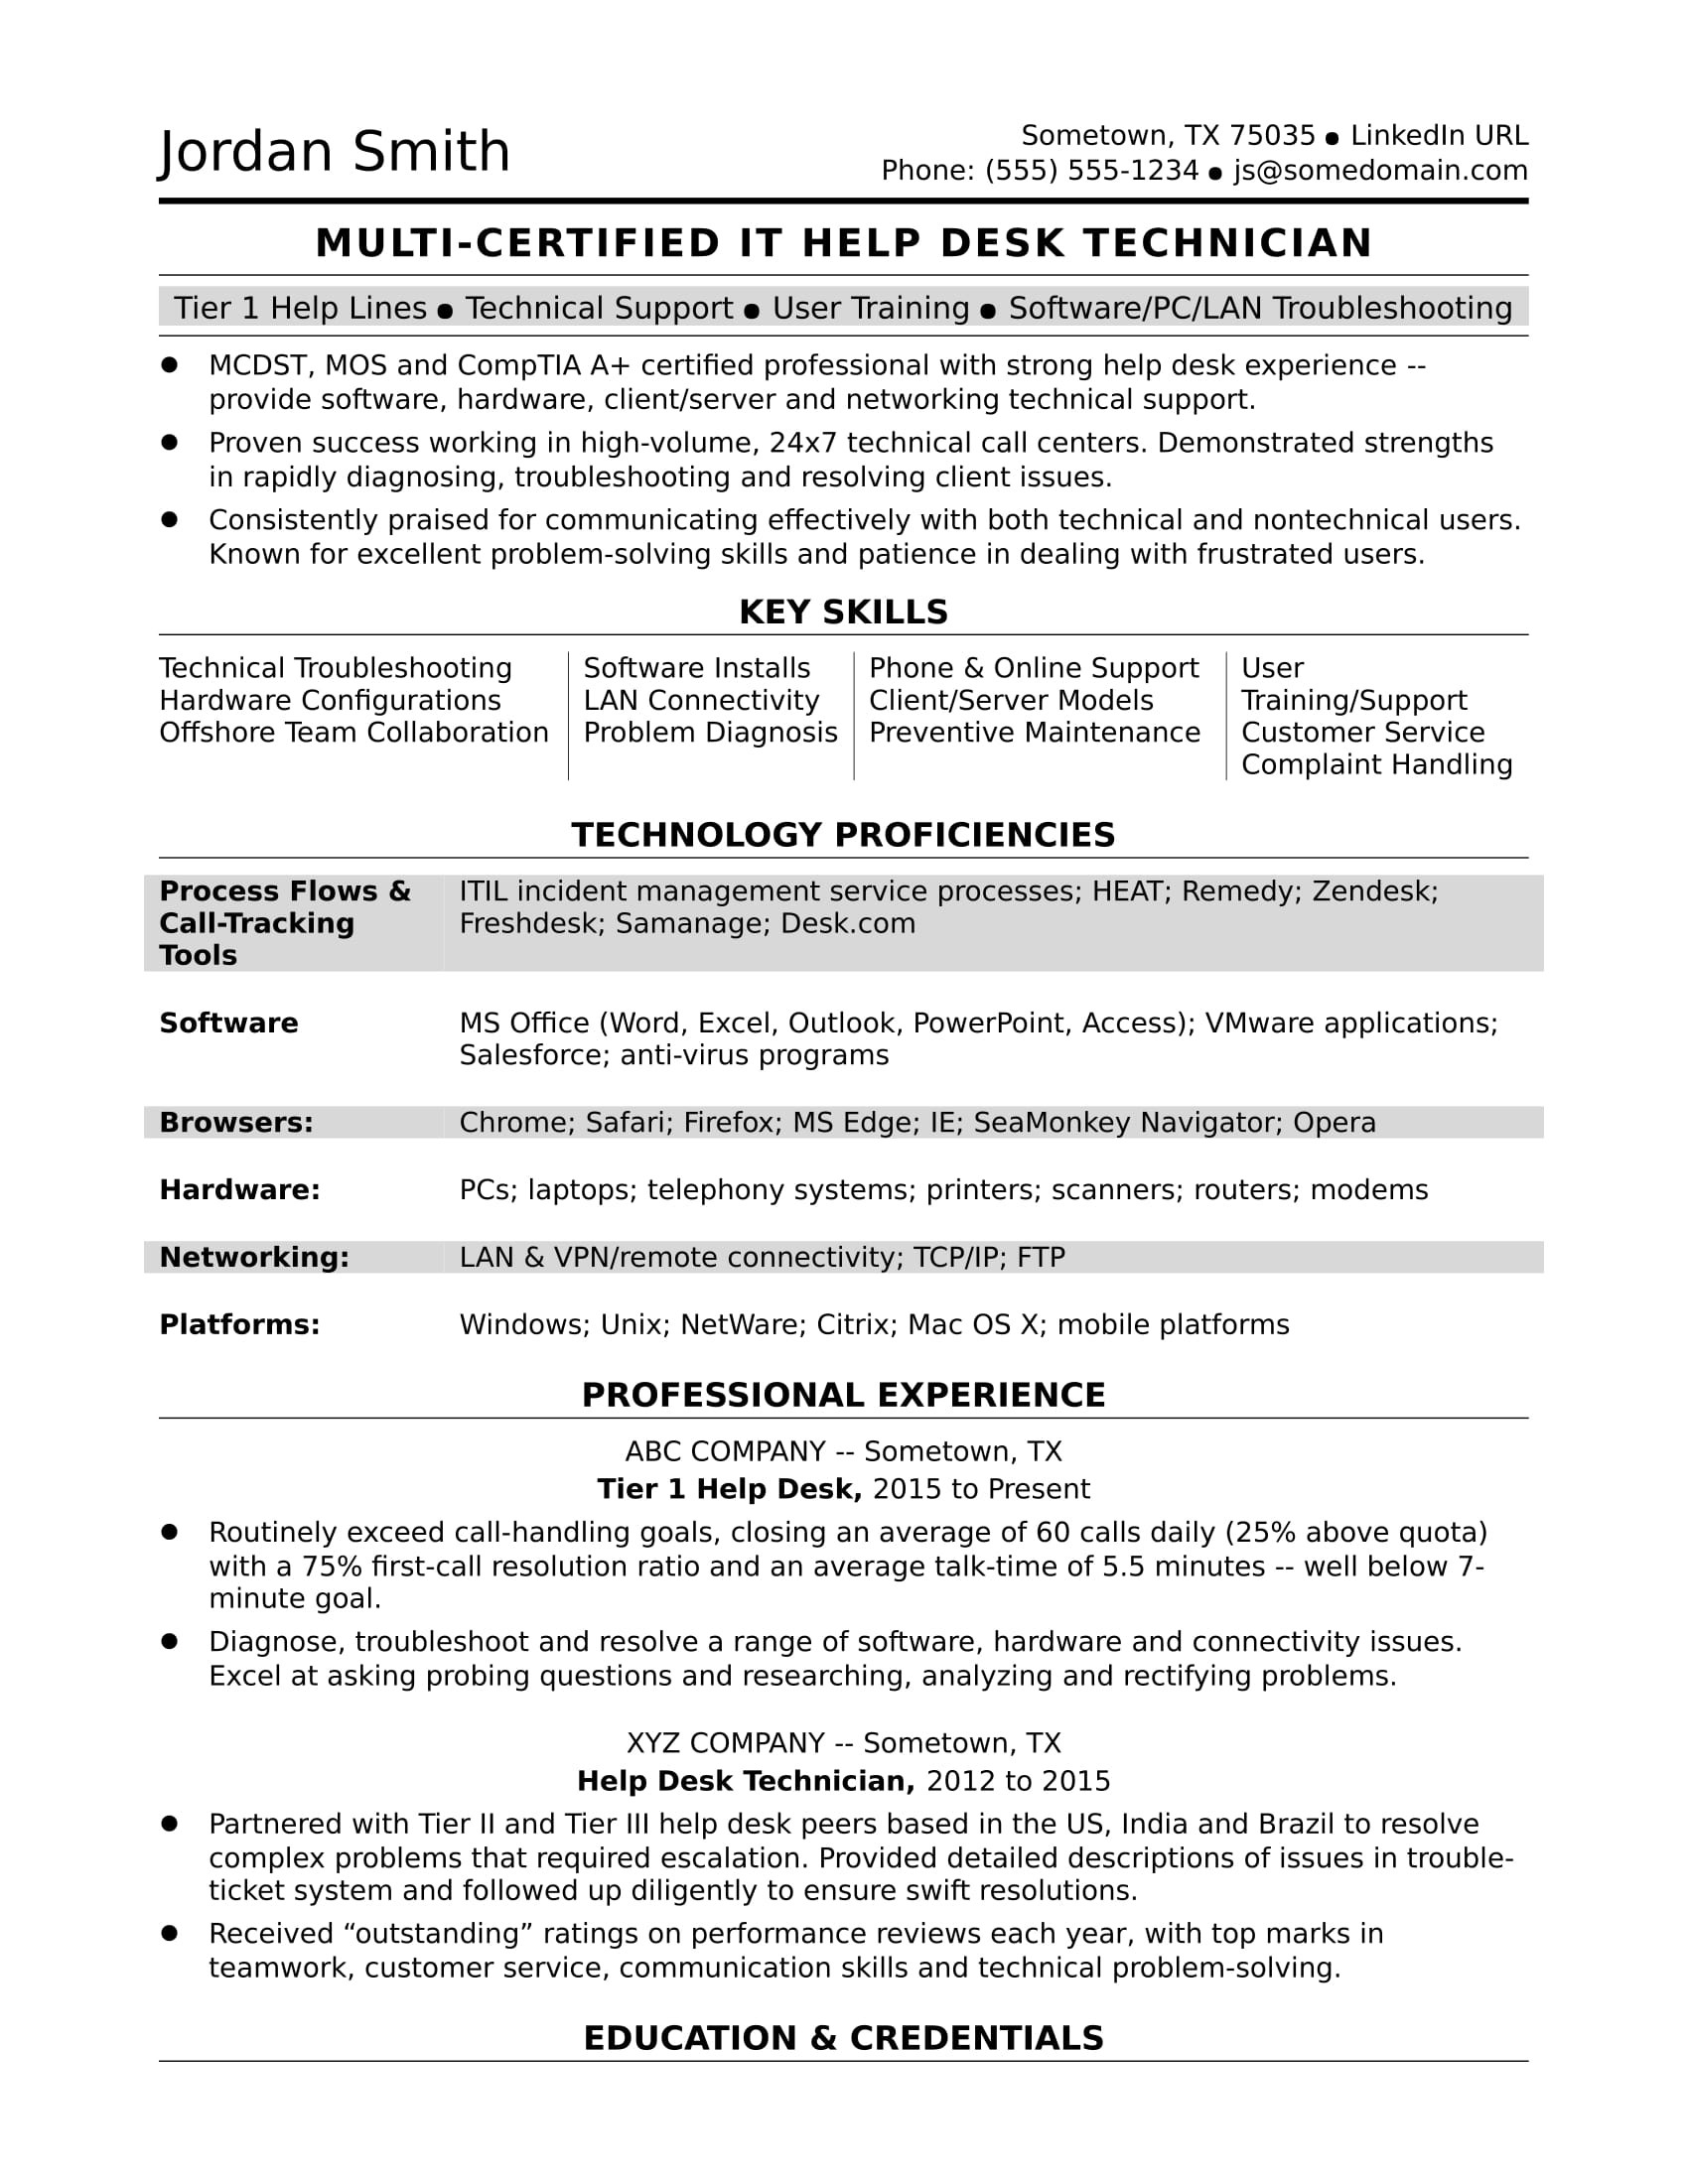 Sample Resume Skills for Computer Hardware Professional Sample Resume for A Midlevel It Help Desk Professional Monster.com